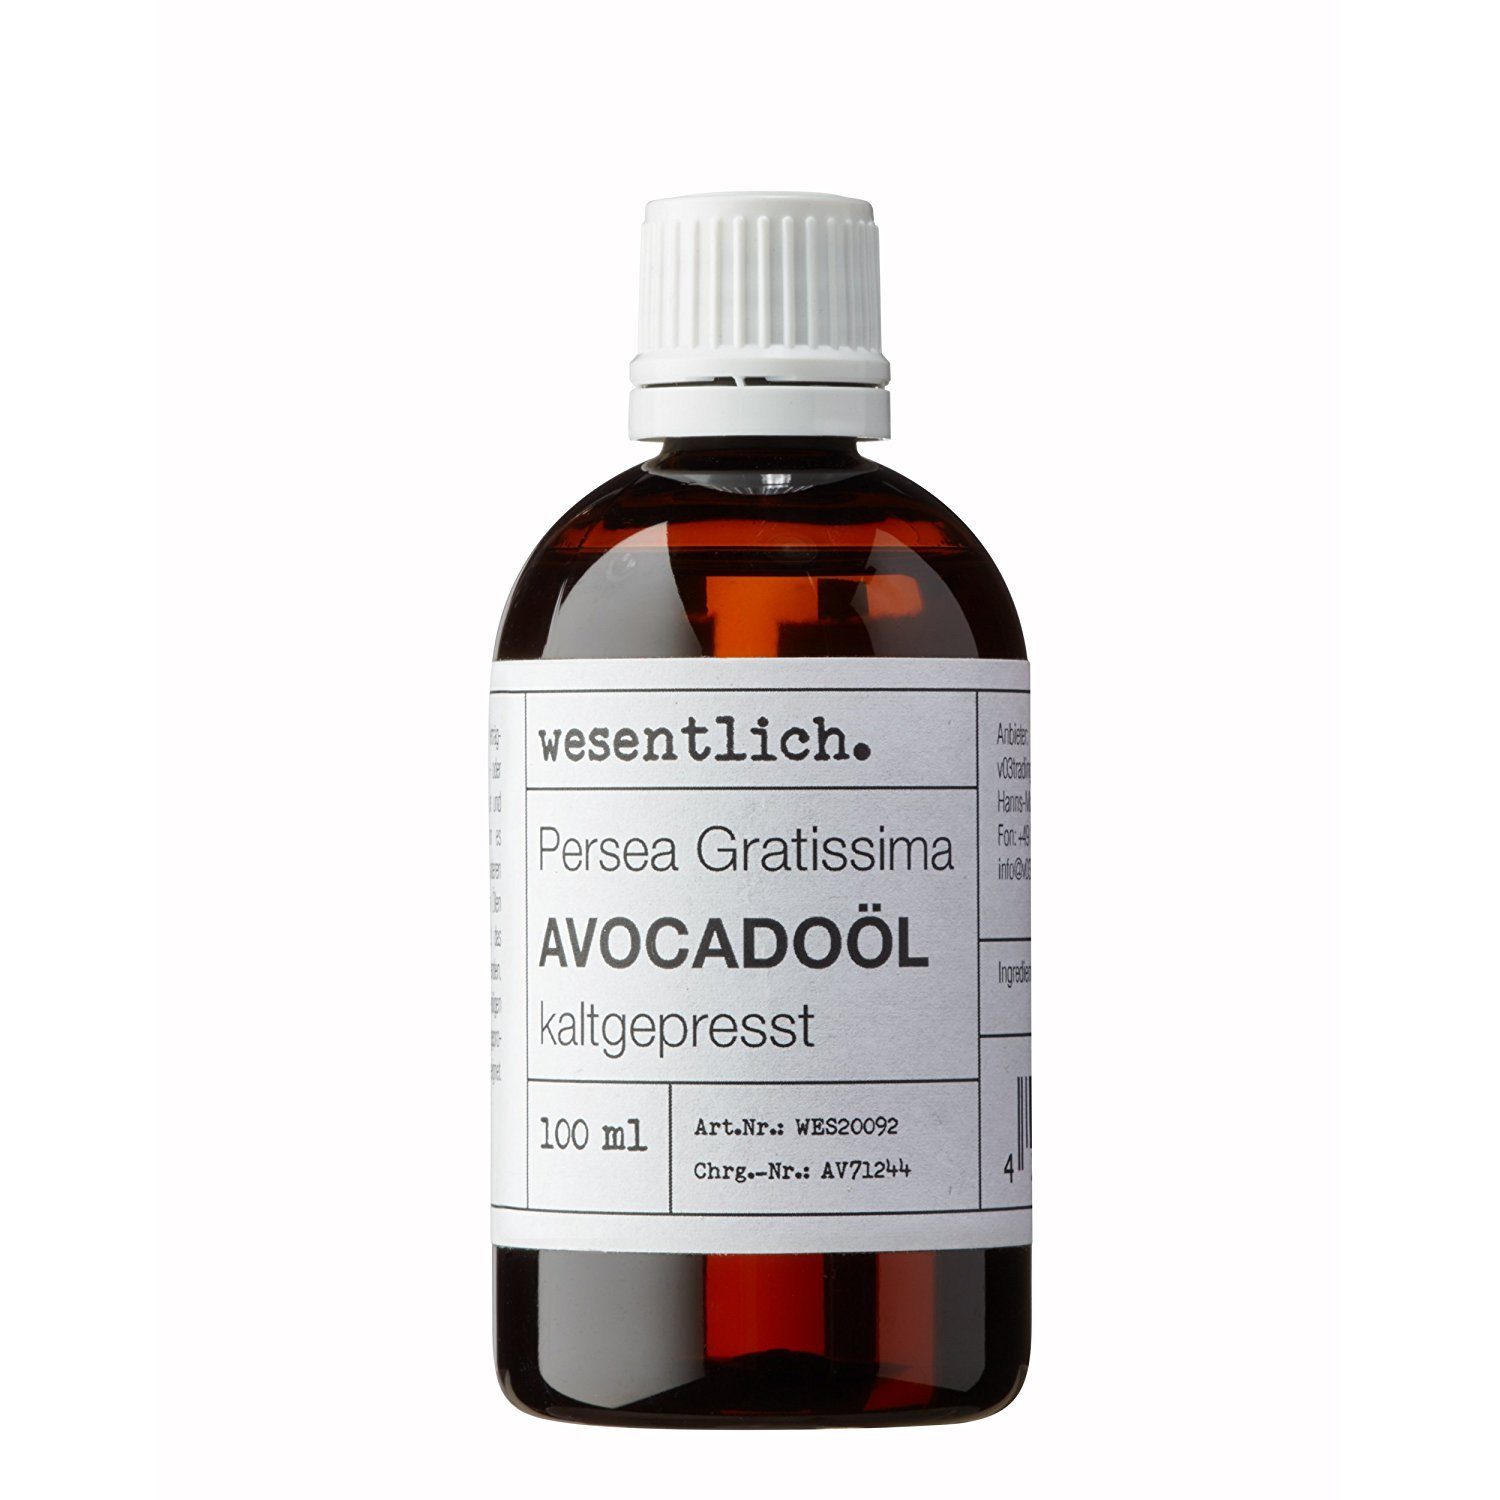 wesentlich. Körperöl Avocadoöl kaltgepresst (100ml) - 100% reines Öl (Persea Gratissima) von wesentlich.